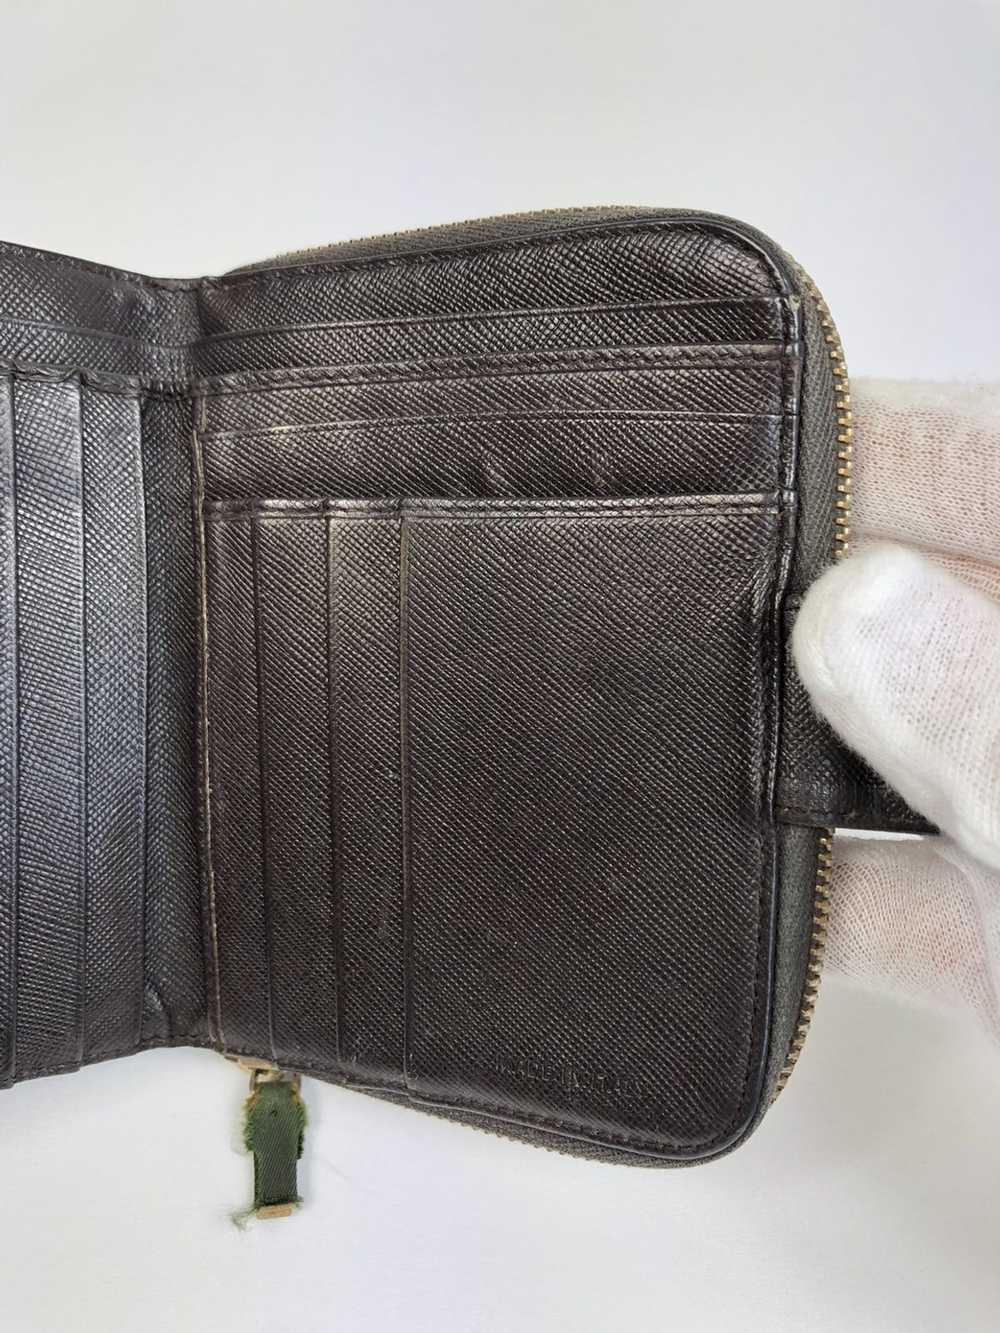 Prada Prada tessuto nylon zippy wallet - image 4